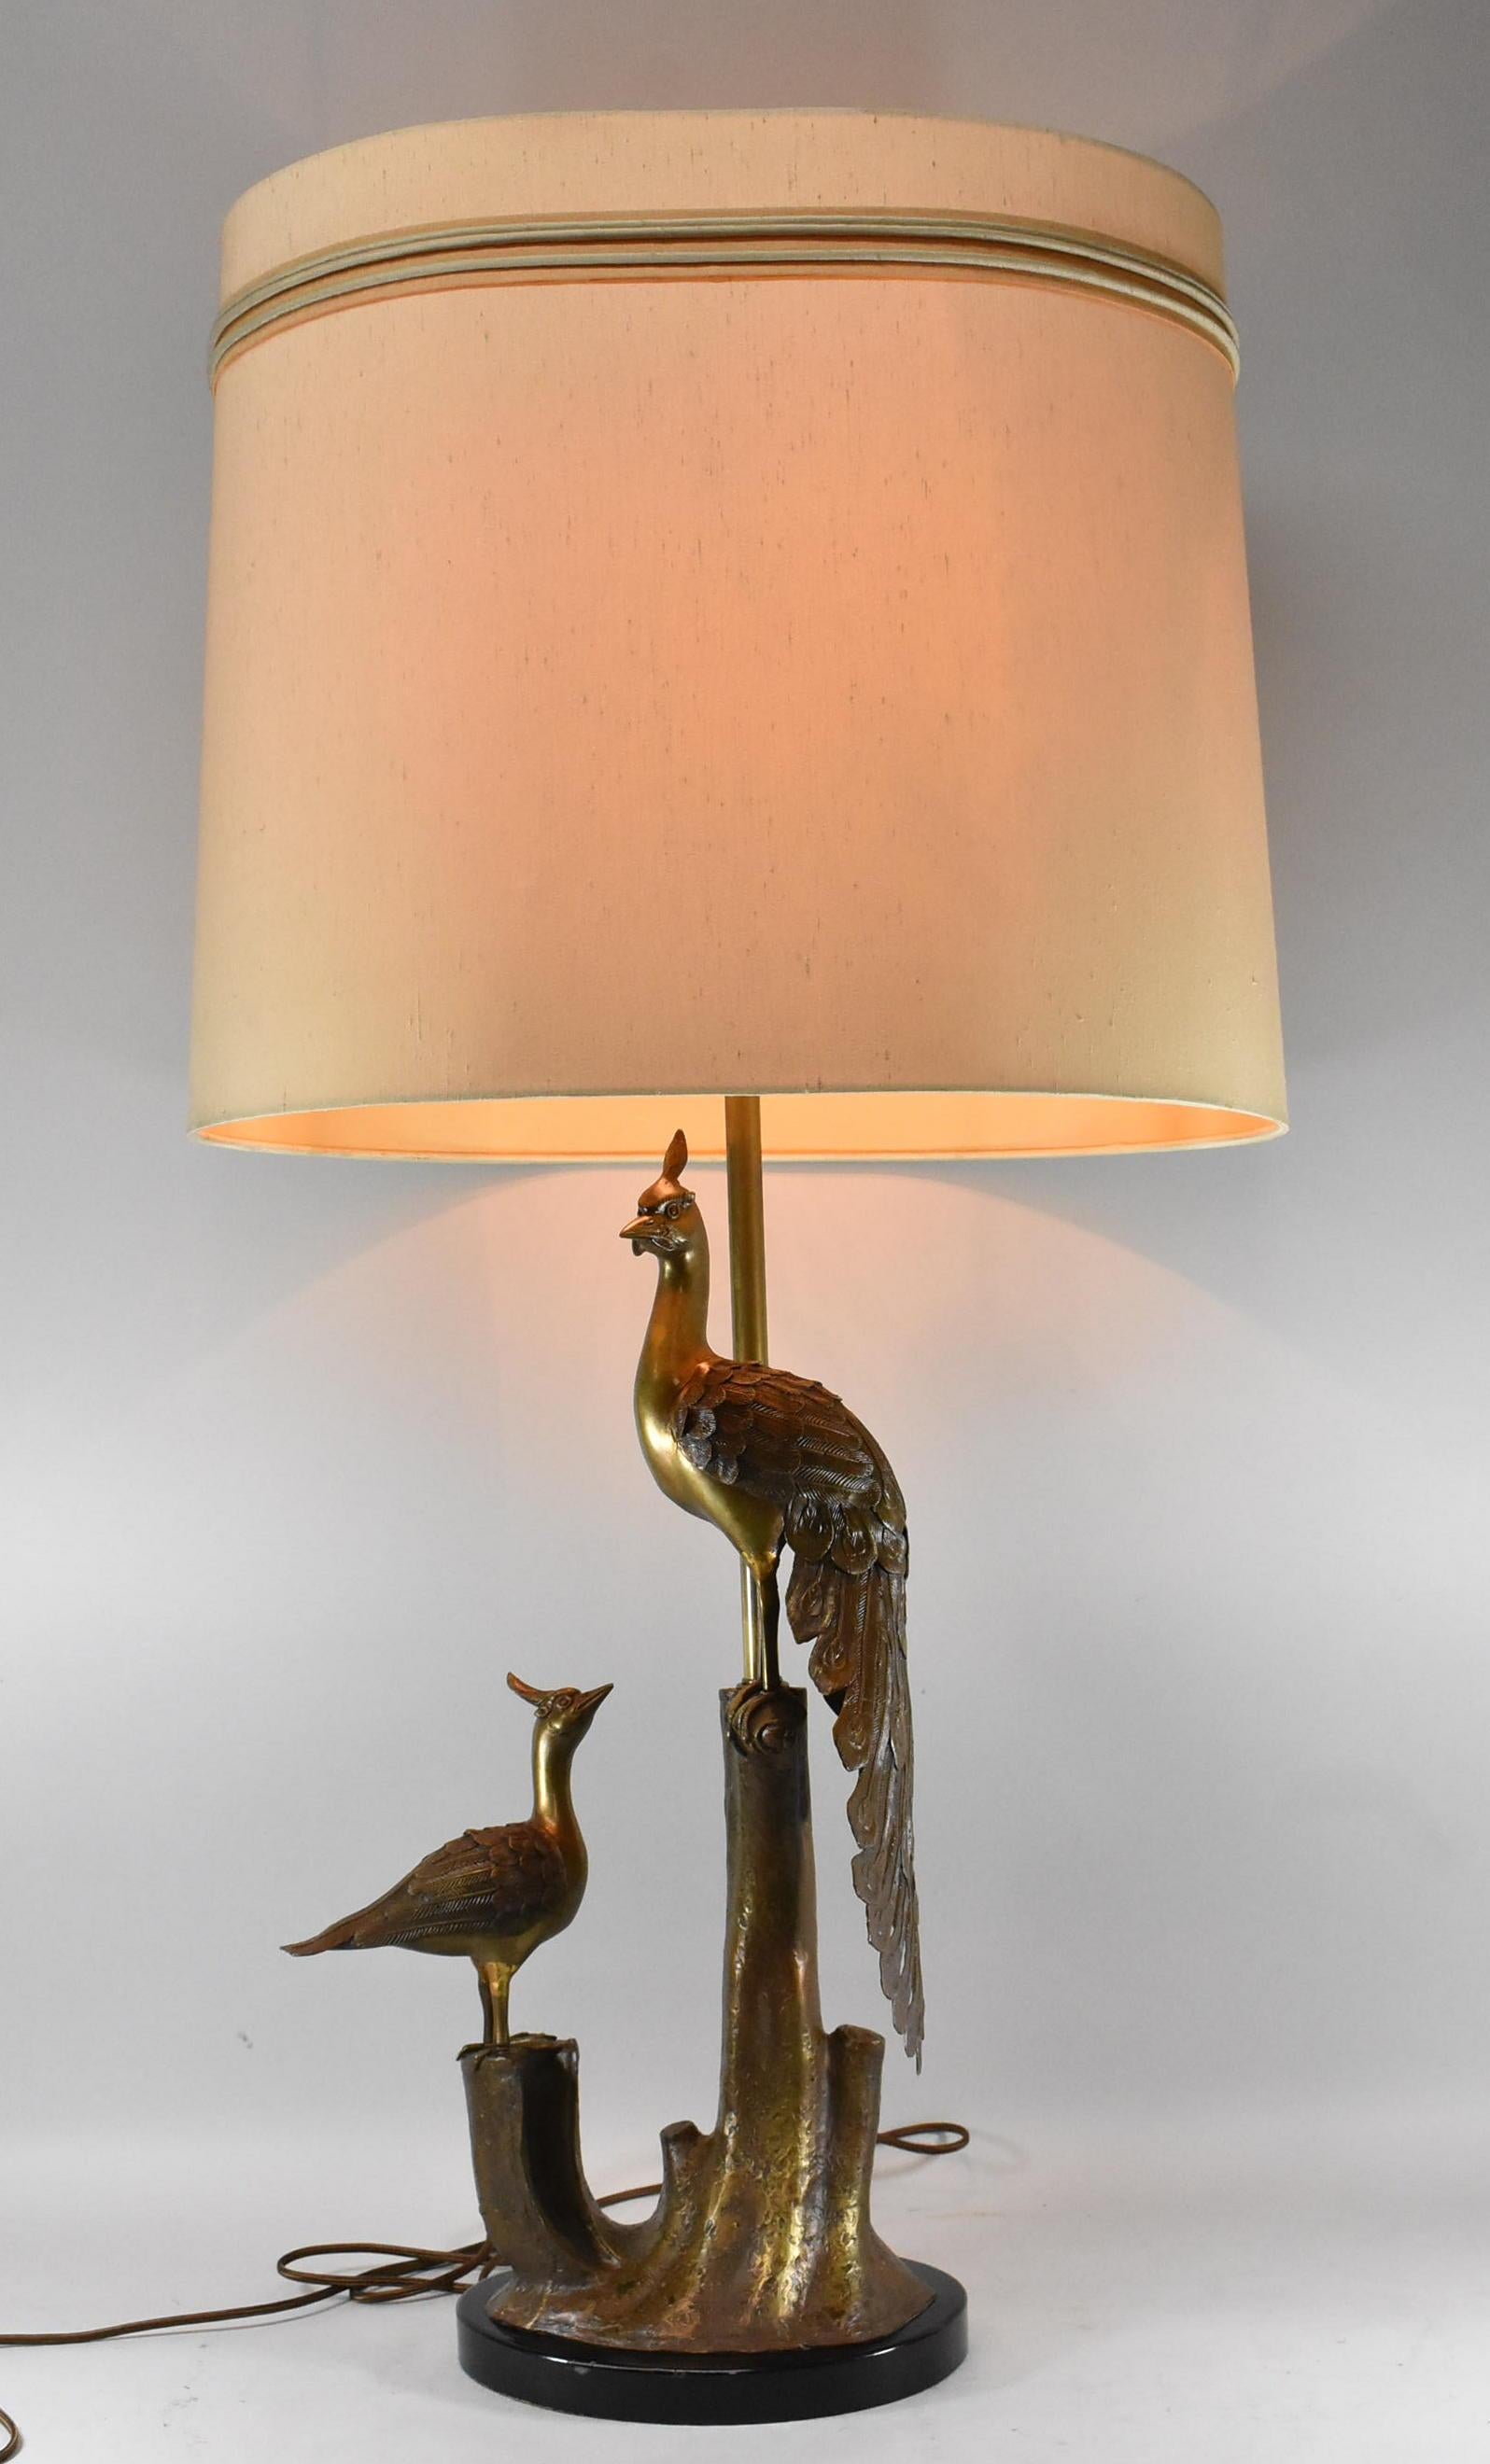 Lampe de table en bronze représentant deux paons assis sur une souche d'arbre. Les plumes et l'écorce d'arbre sont magnifiquement texturées. La lampe est recâblée. L'abat-jour n'est pas inclus.